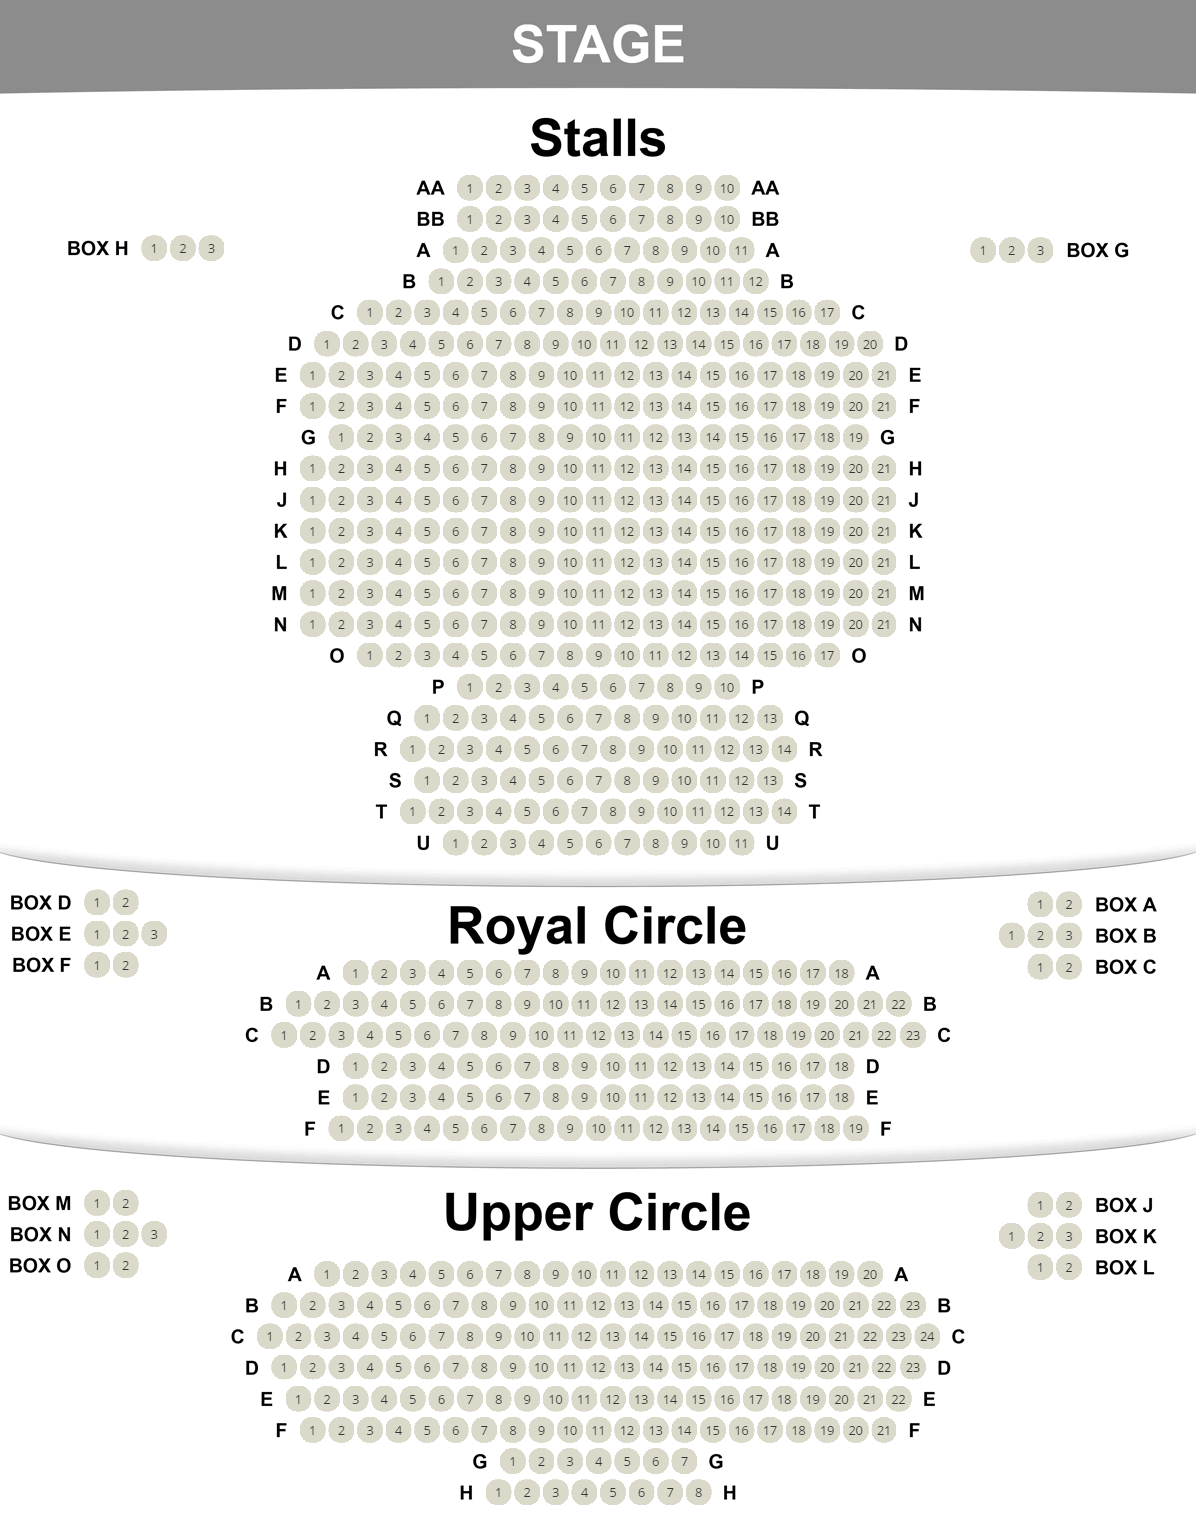 Duke of York's seating plan